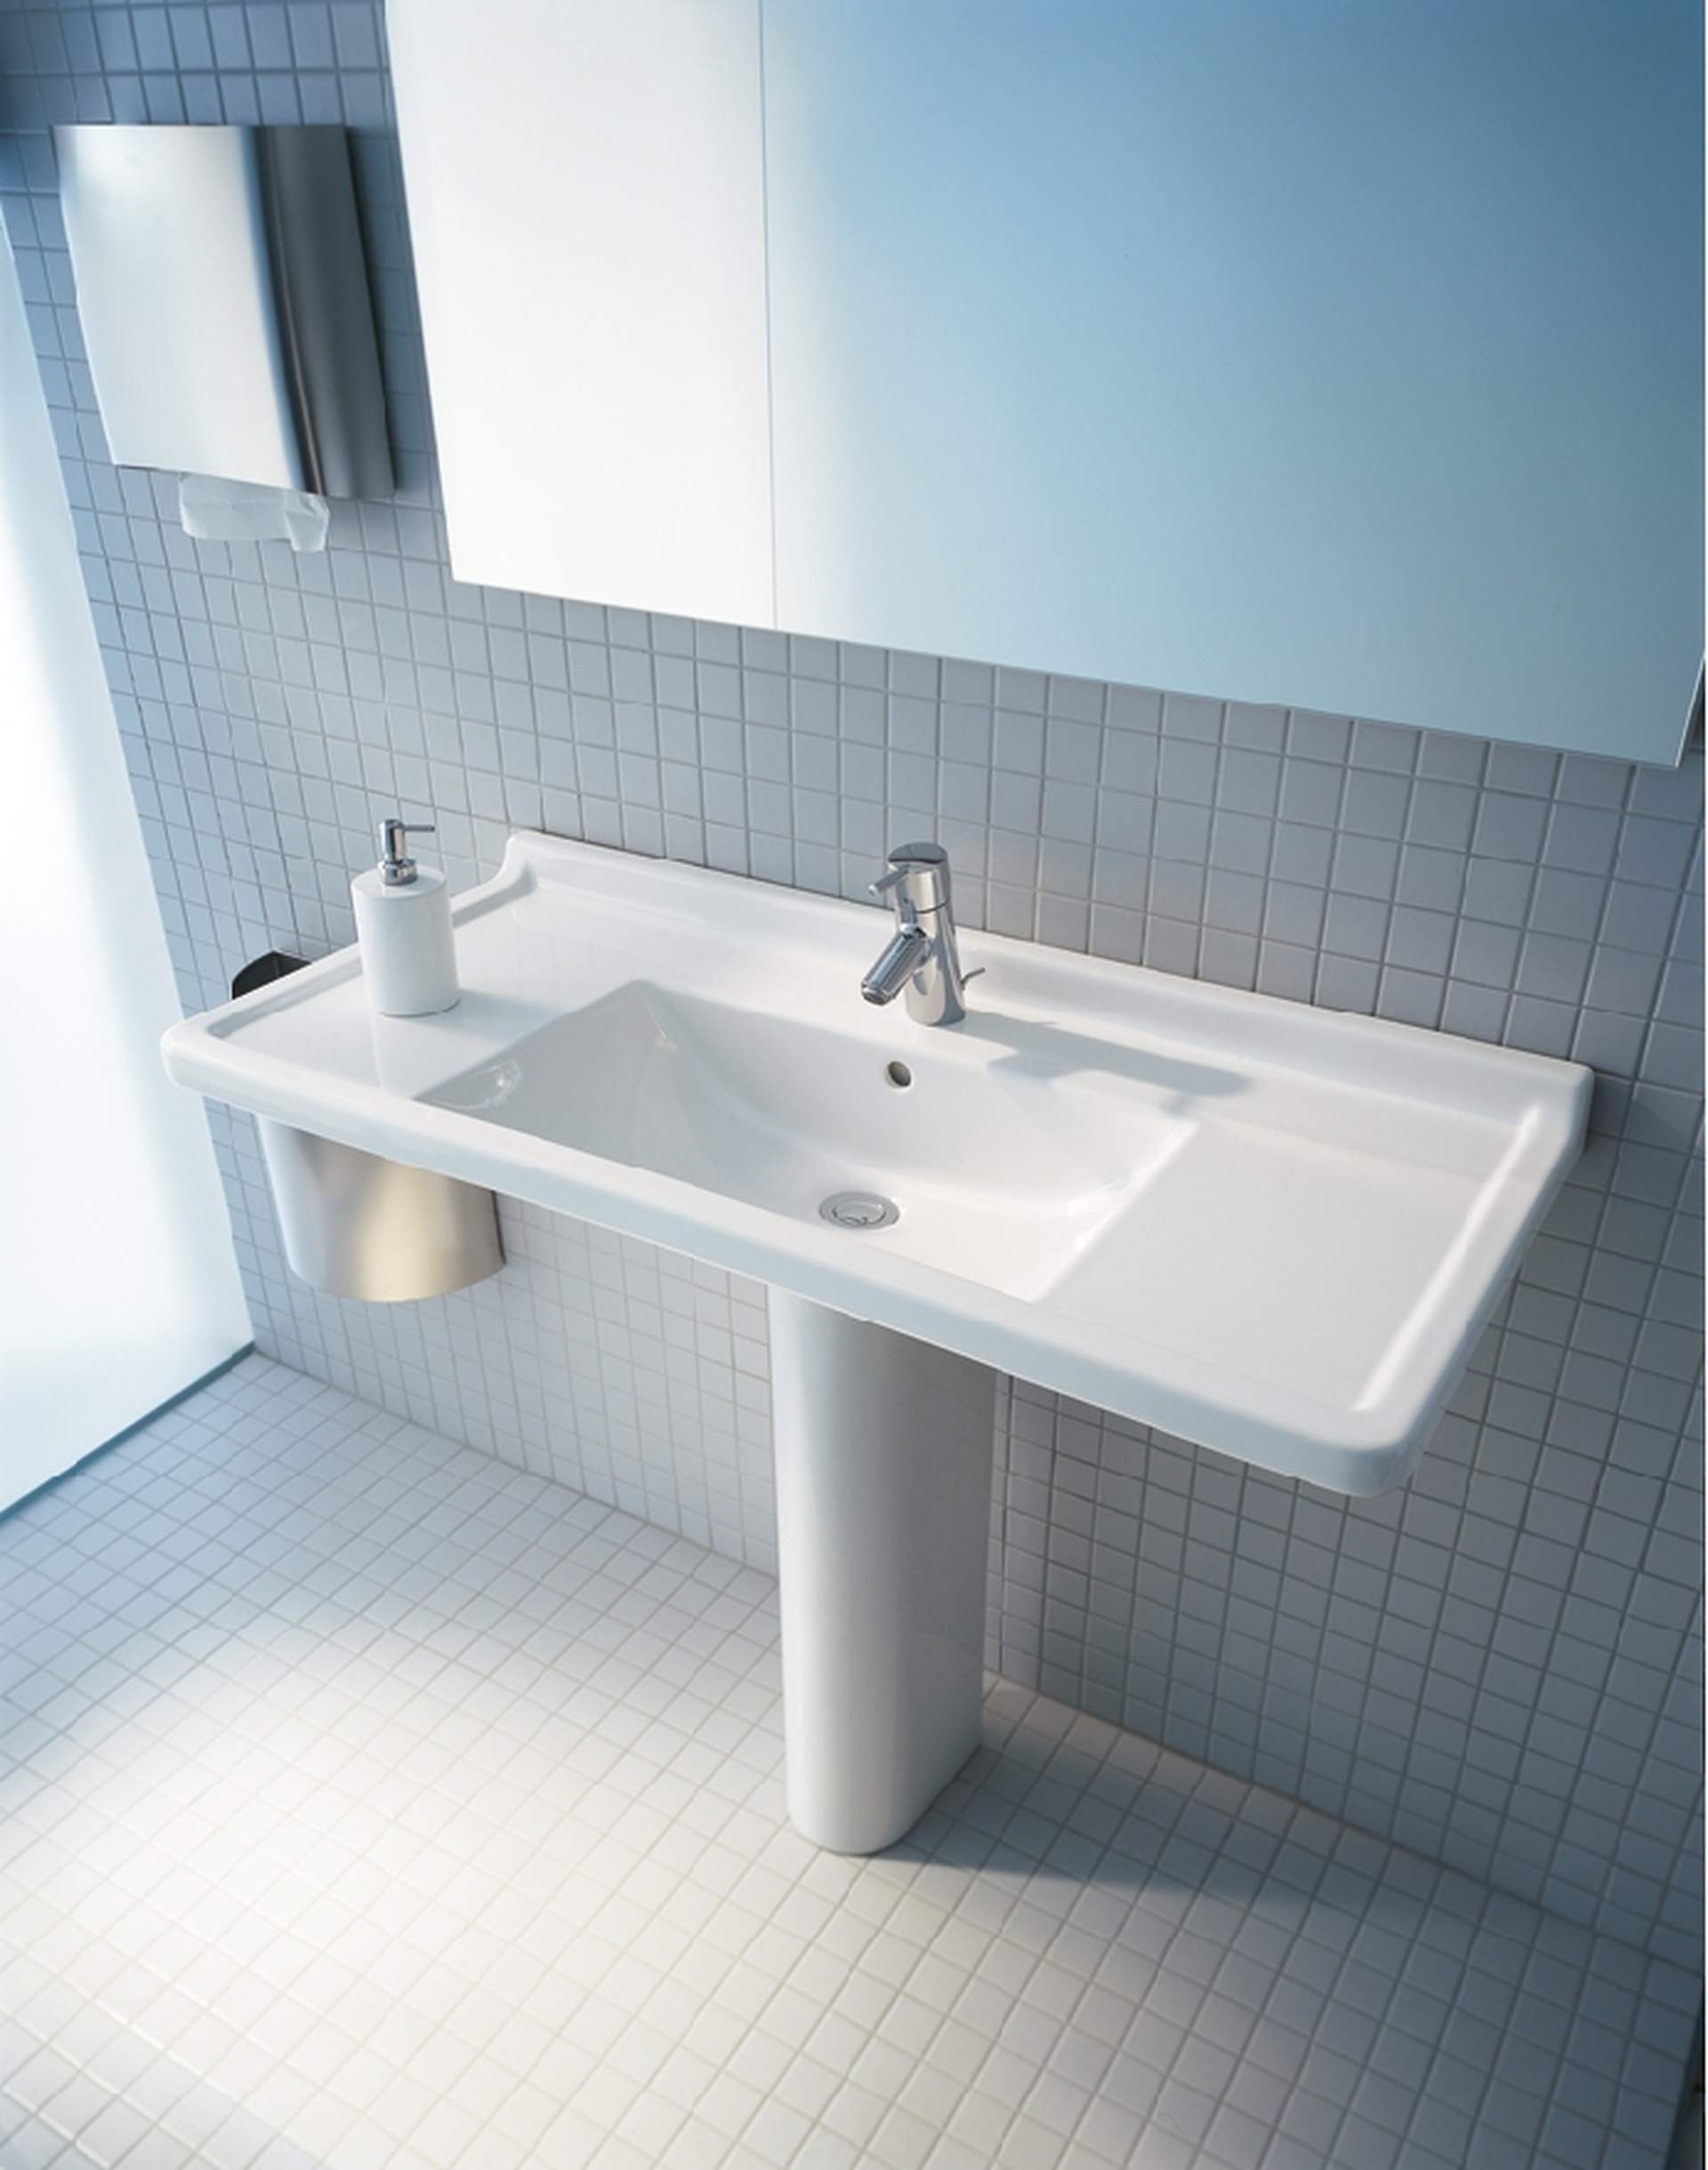 Furniture washbasin, 030480